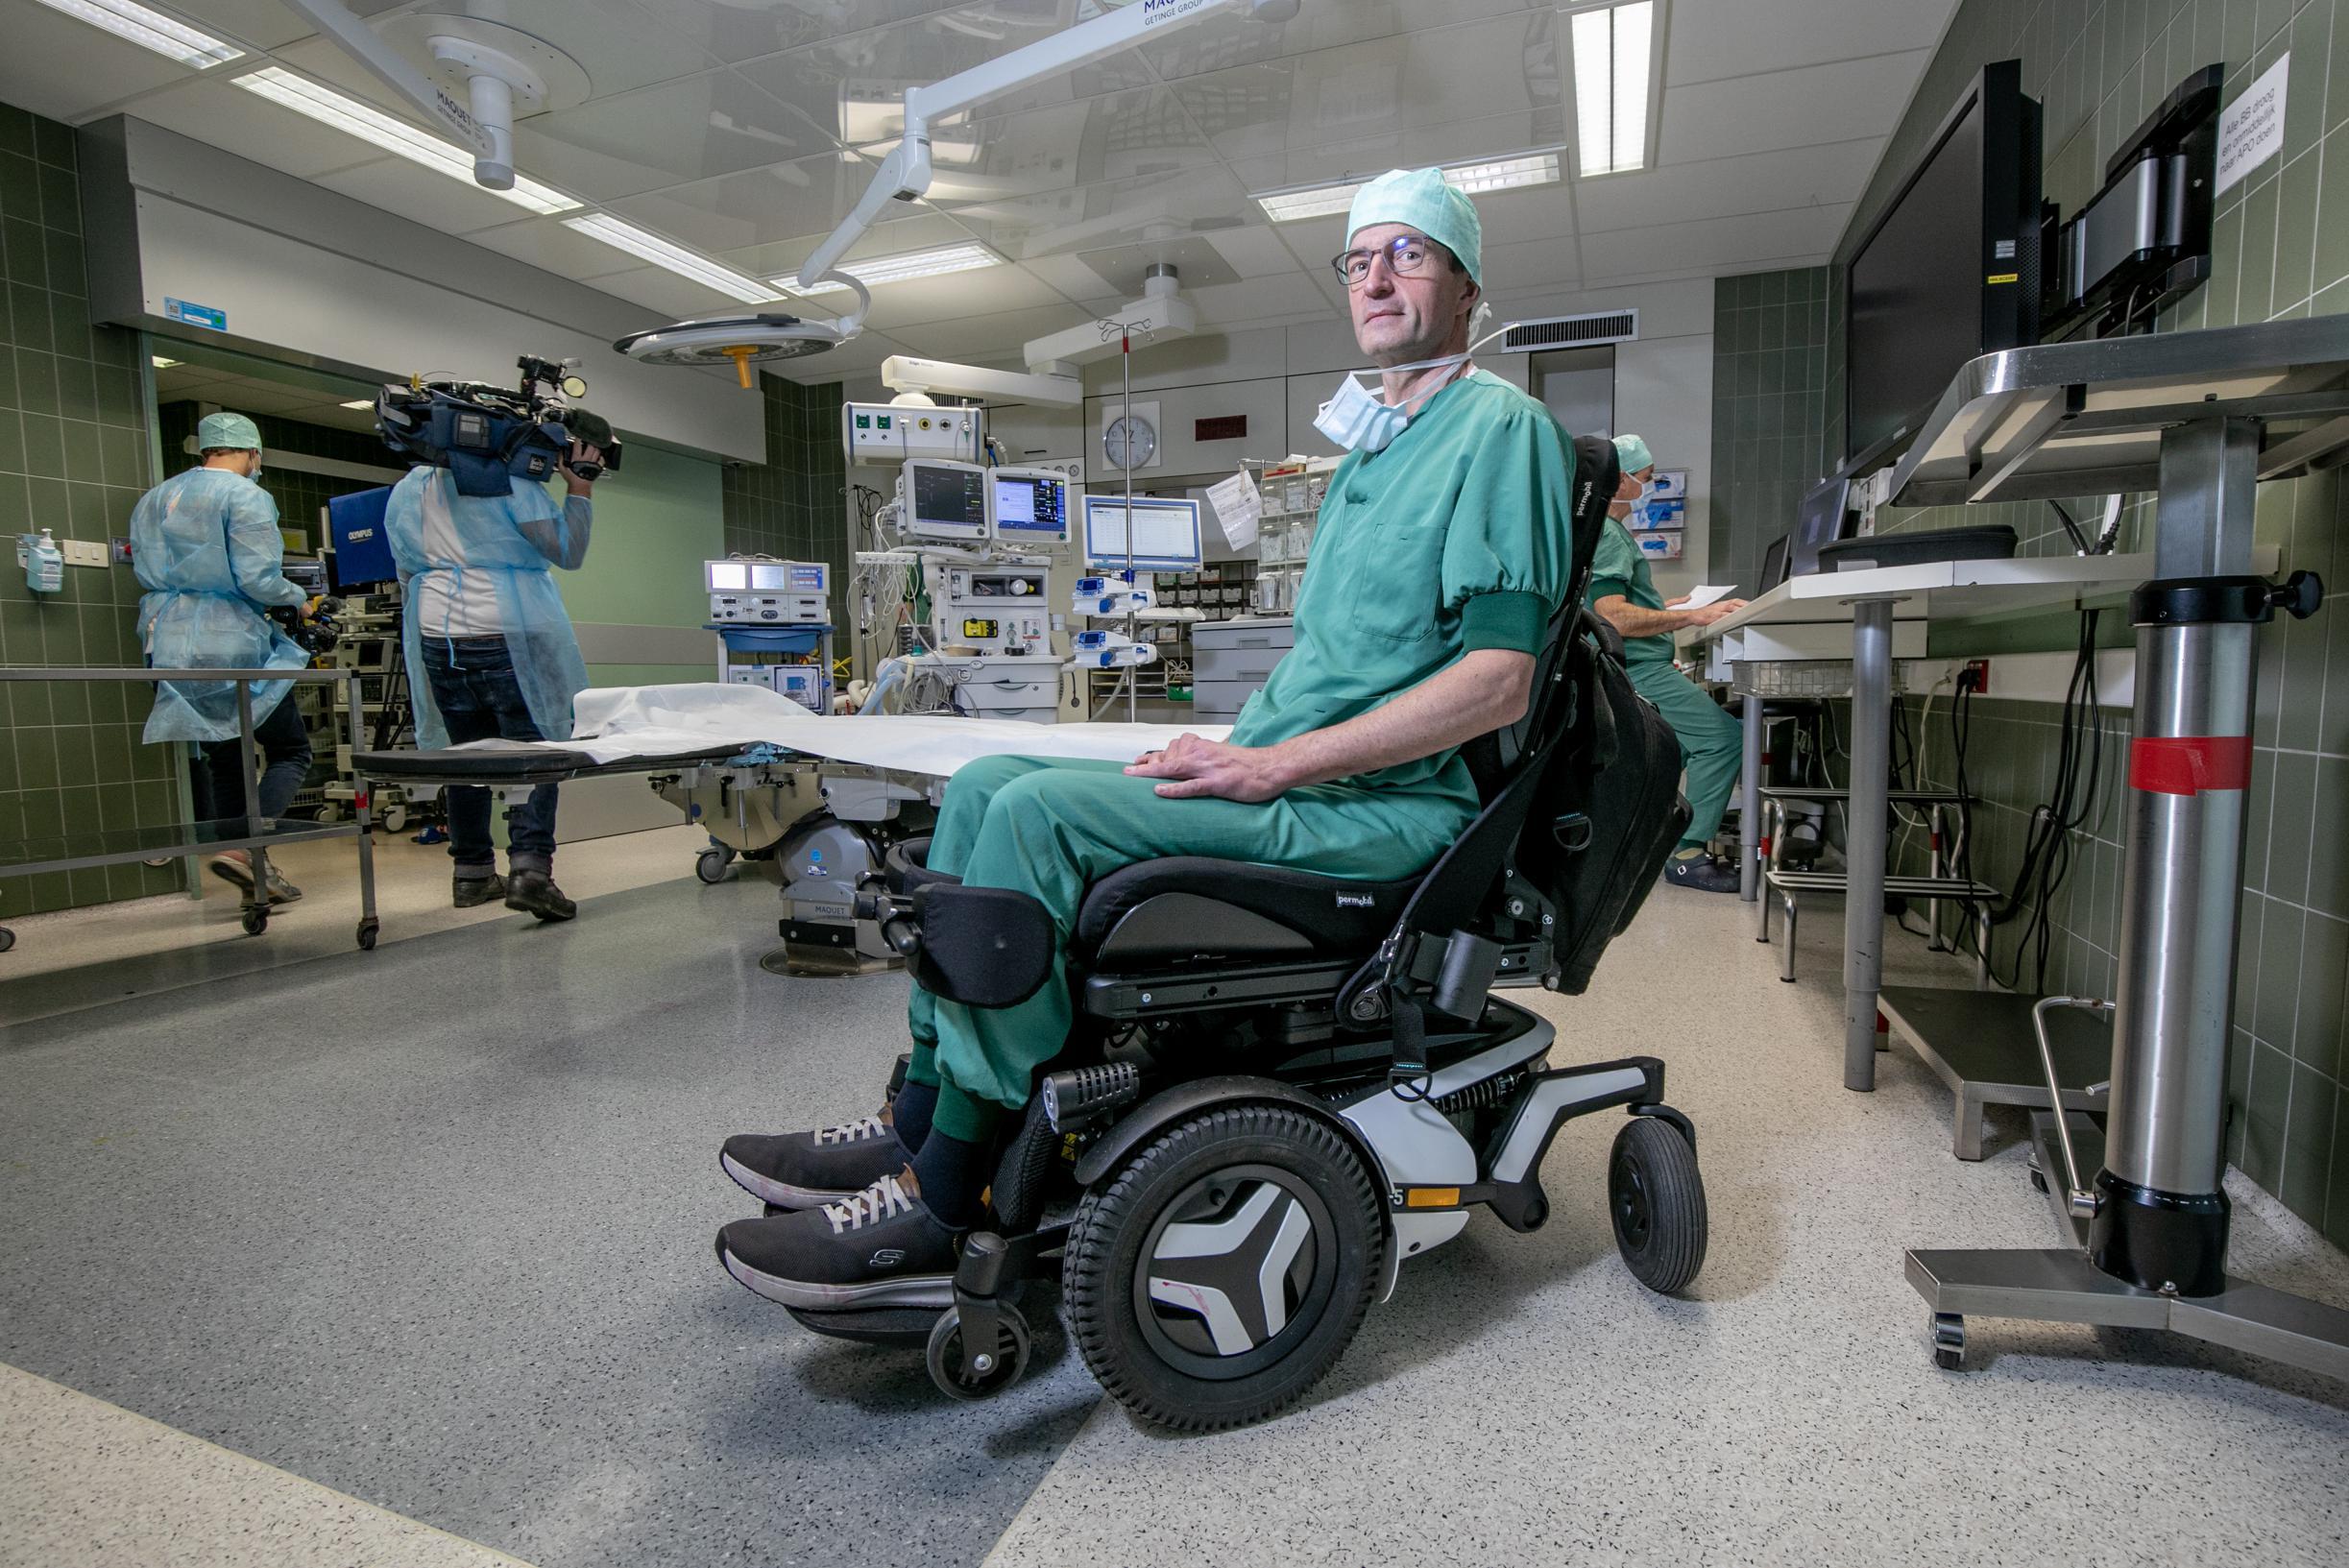 Democratie storting pedaal Hij raakte 8 maanden geleden verlamd, nu opereert dokter Geoffroy (53)  vanuit rolstoel: “Dit was de grootste uitdaging van mijn leven” | Het  Nieuwsblad Mobile